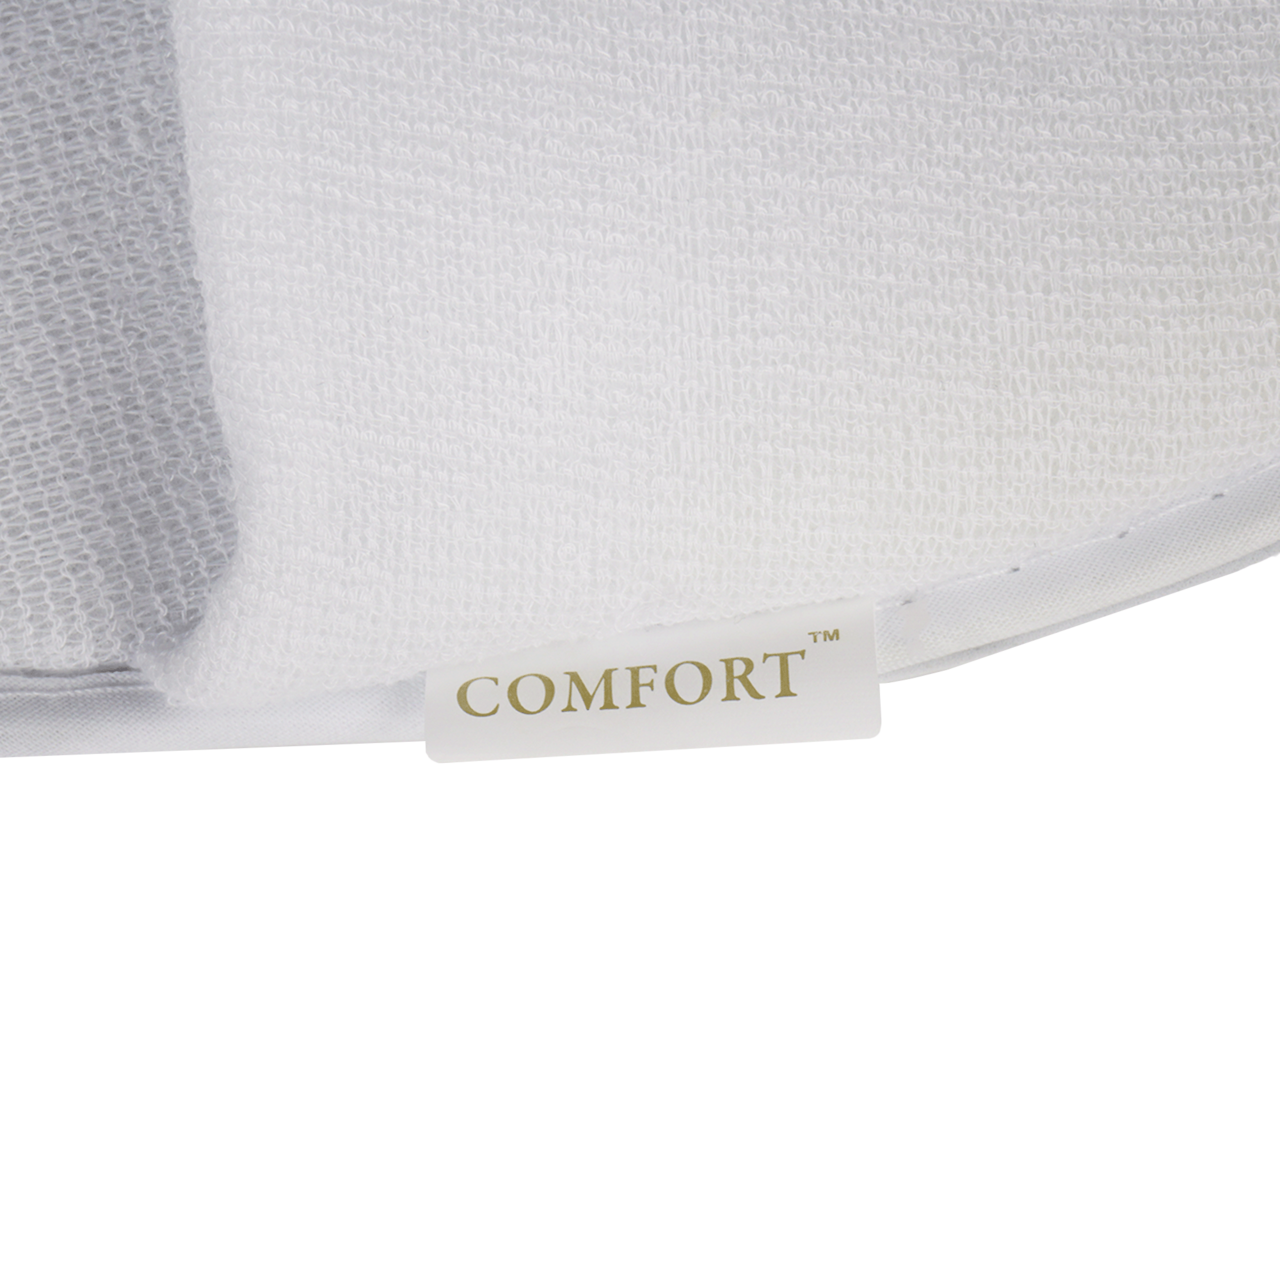 Slippers Comfort 28 cm, White